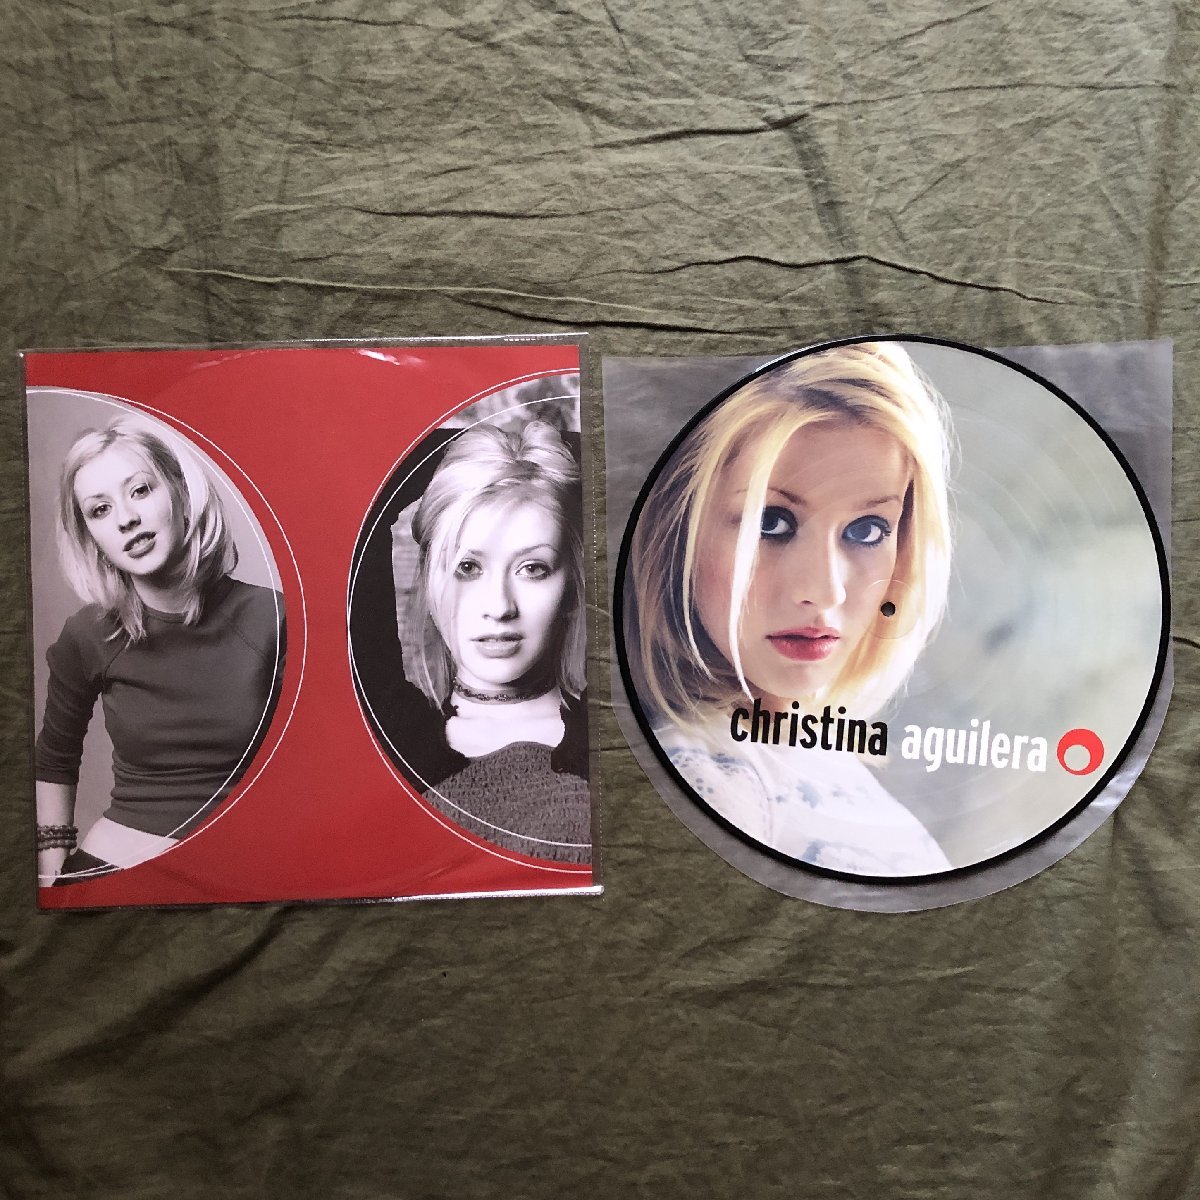 未使用新品 2019年 欧州盤 オリジナルリリース盤 クリスティーナ・アギレラ Christina Aguilera ピクチャーLPレコード S/T Michael Landau_画像3